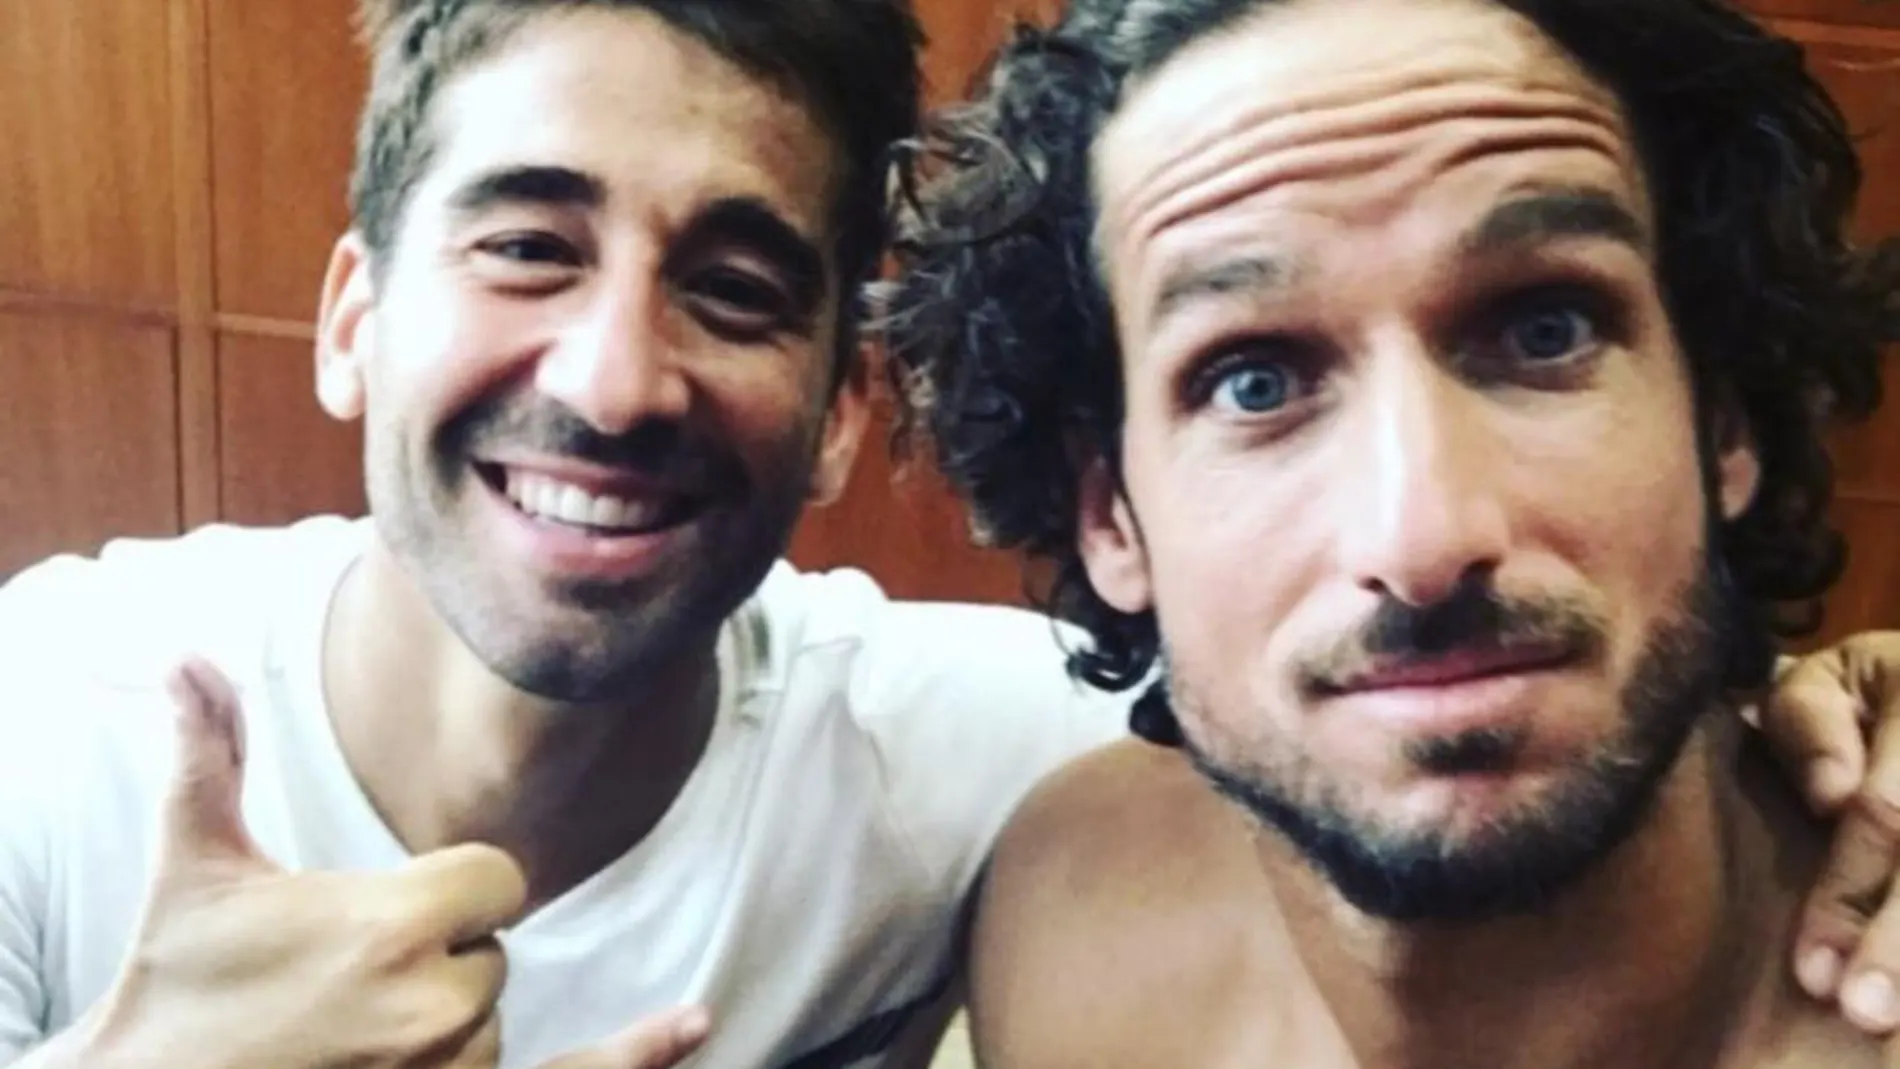 Marc López y Feliciano se hicieron este selfie para celebrar su pase a la final del Abierto de Estados Unidos